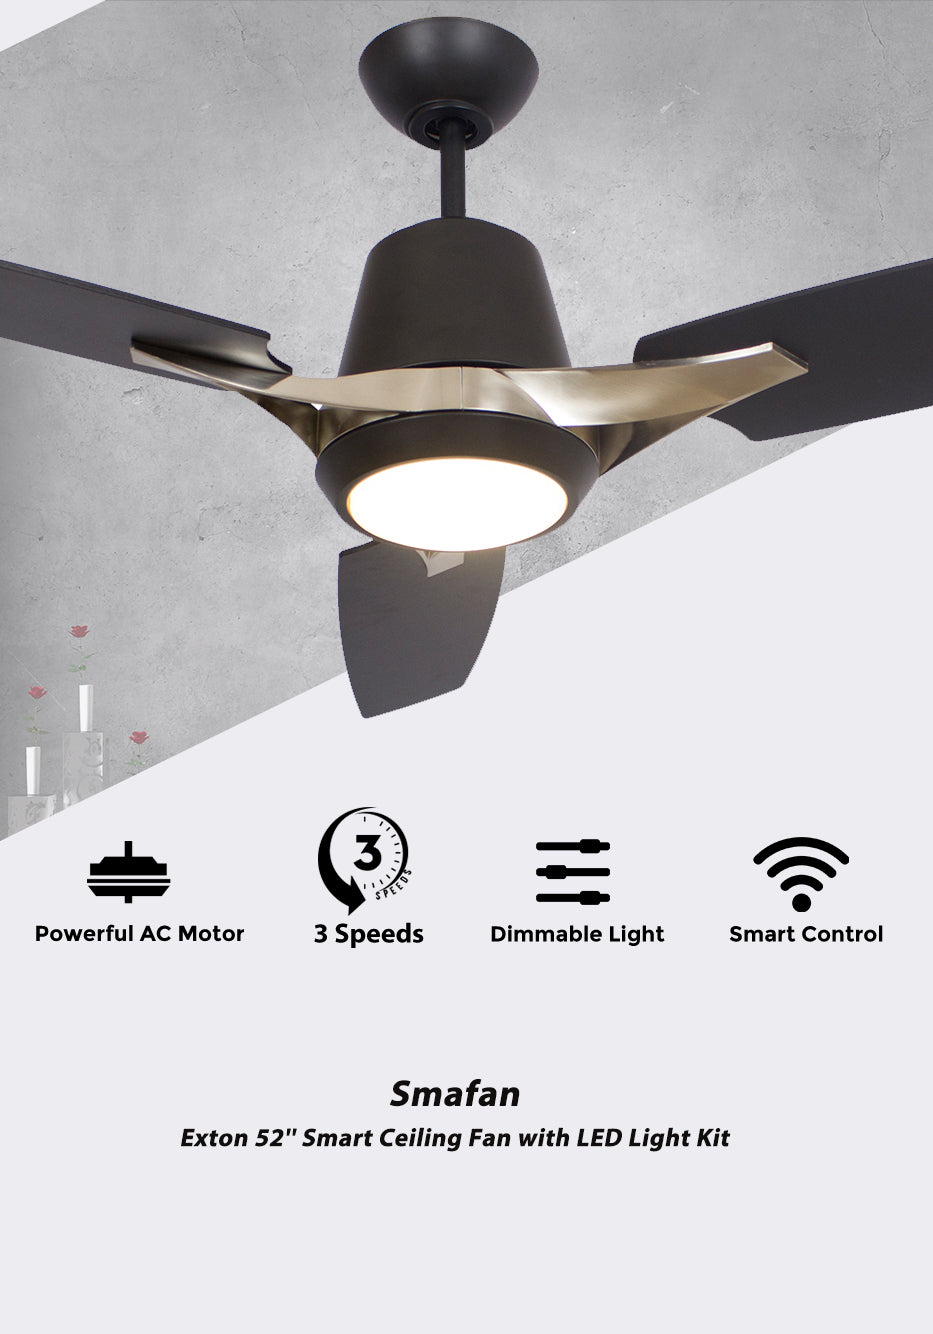 Carro-Smafan-Exton-52”-Wifi-Smart-Ceiling-Fan-with-LED-Light-Kit (2)